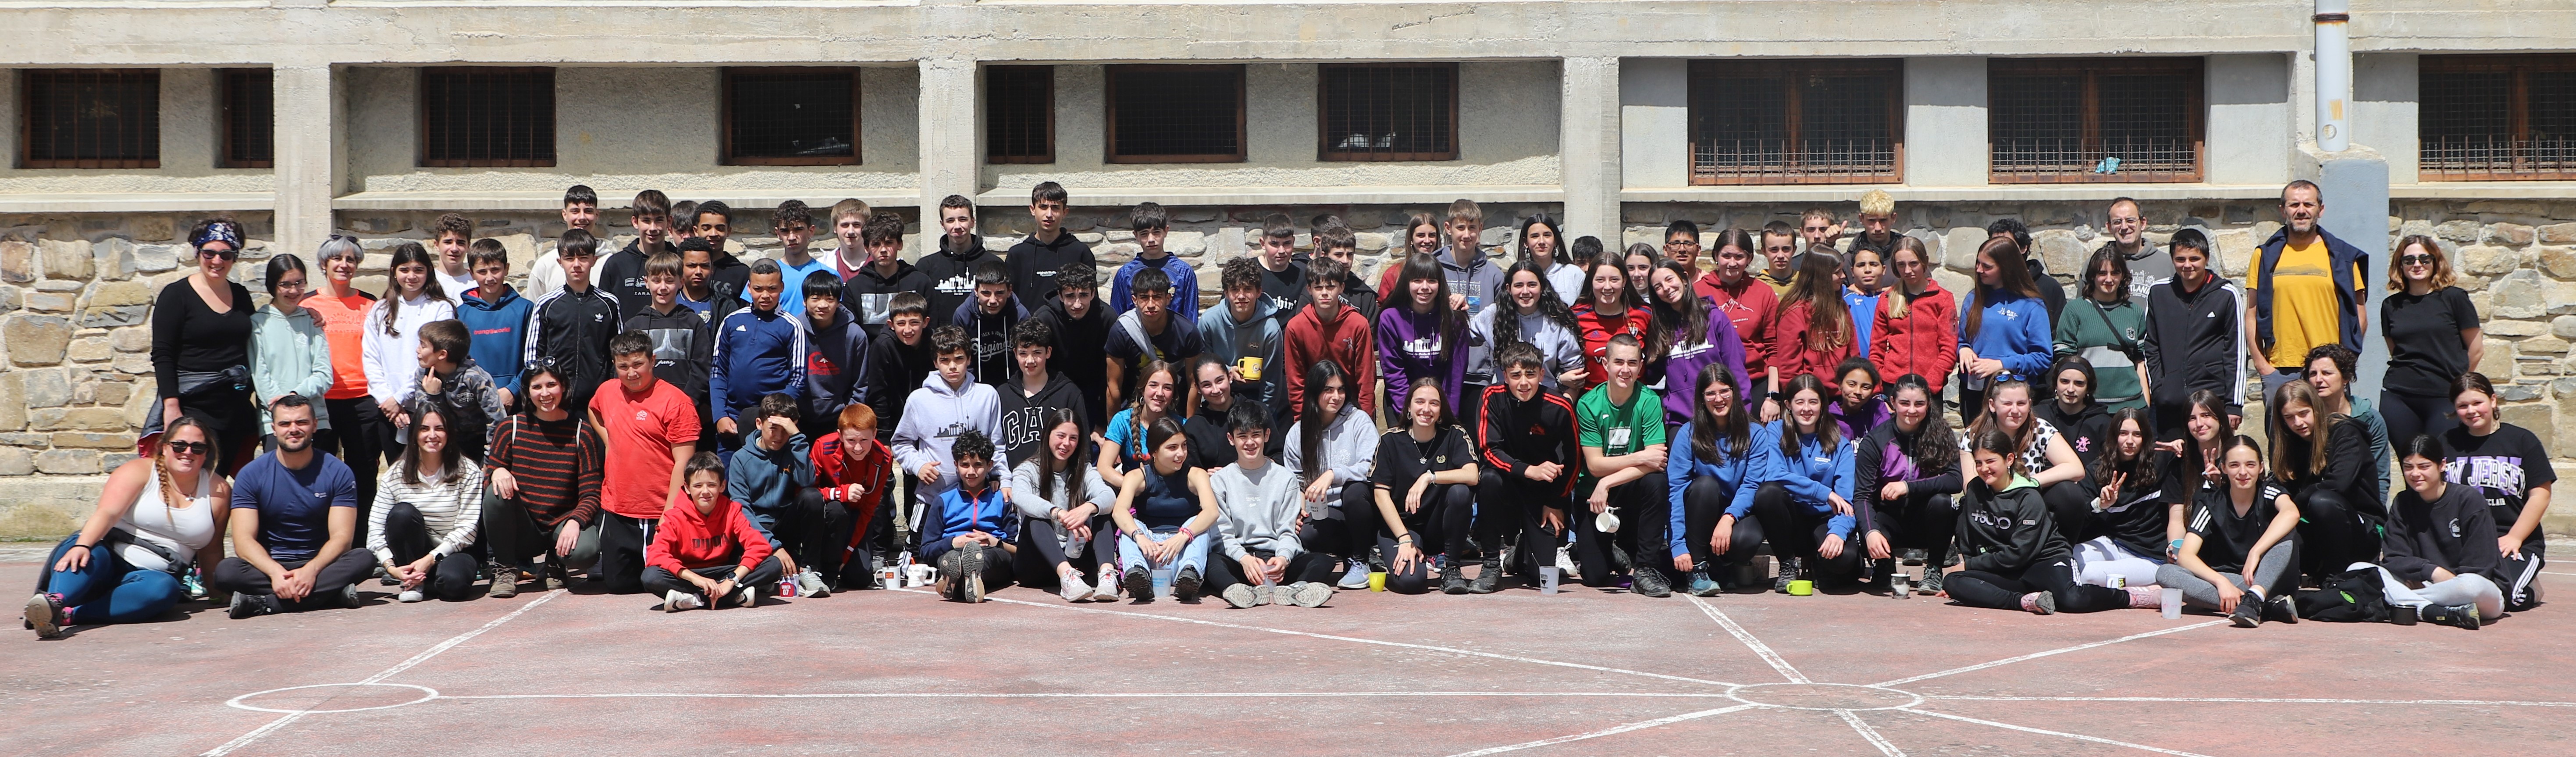 Celebraciones de las escuelas rurales del Pirineo navarro para impulsar las relaciones entre sus jóvenes generaciones